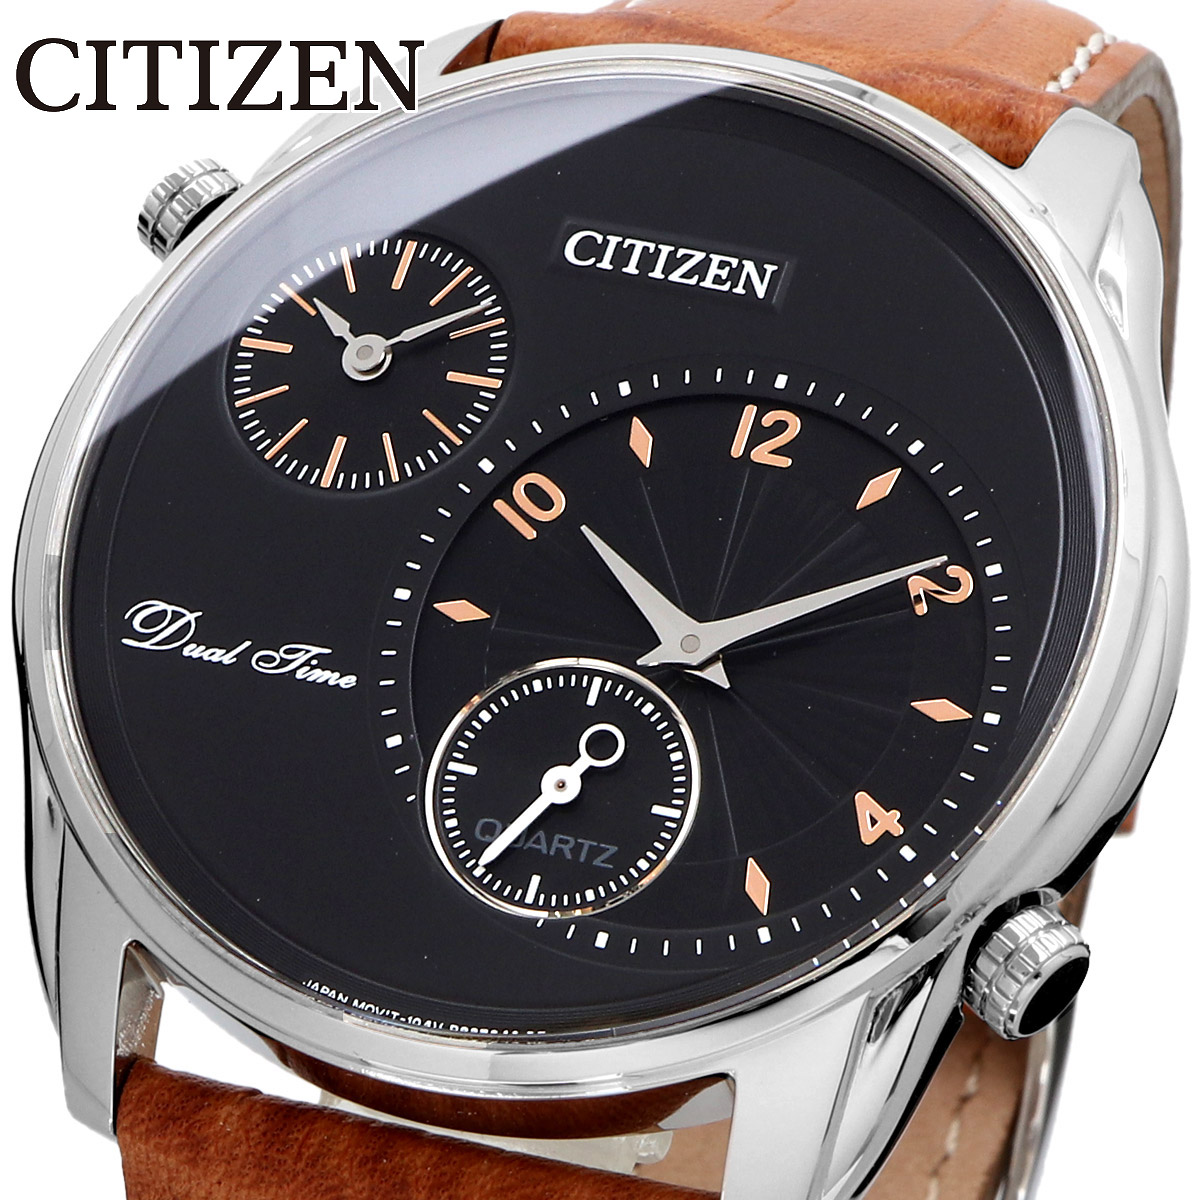 CITIZEN シチズン 腕時計 メンズ 海外モデル デュアルタイム クォーツ ビジネス カジュアル  AO3030-08E